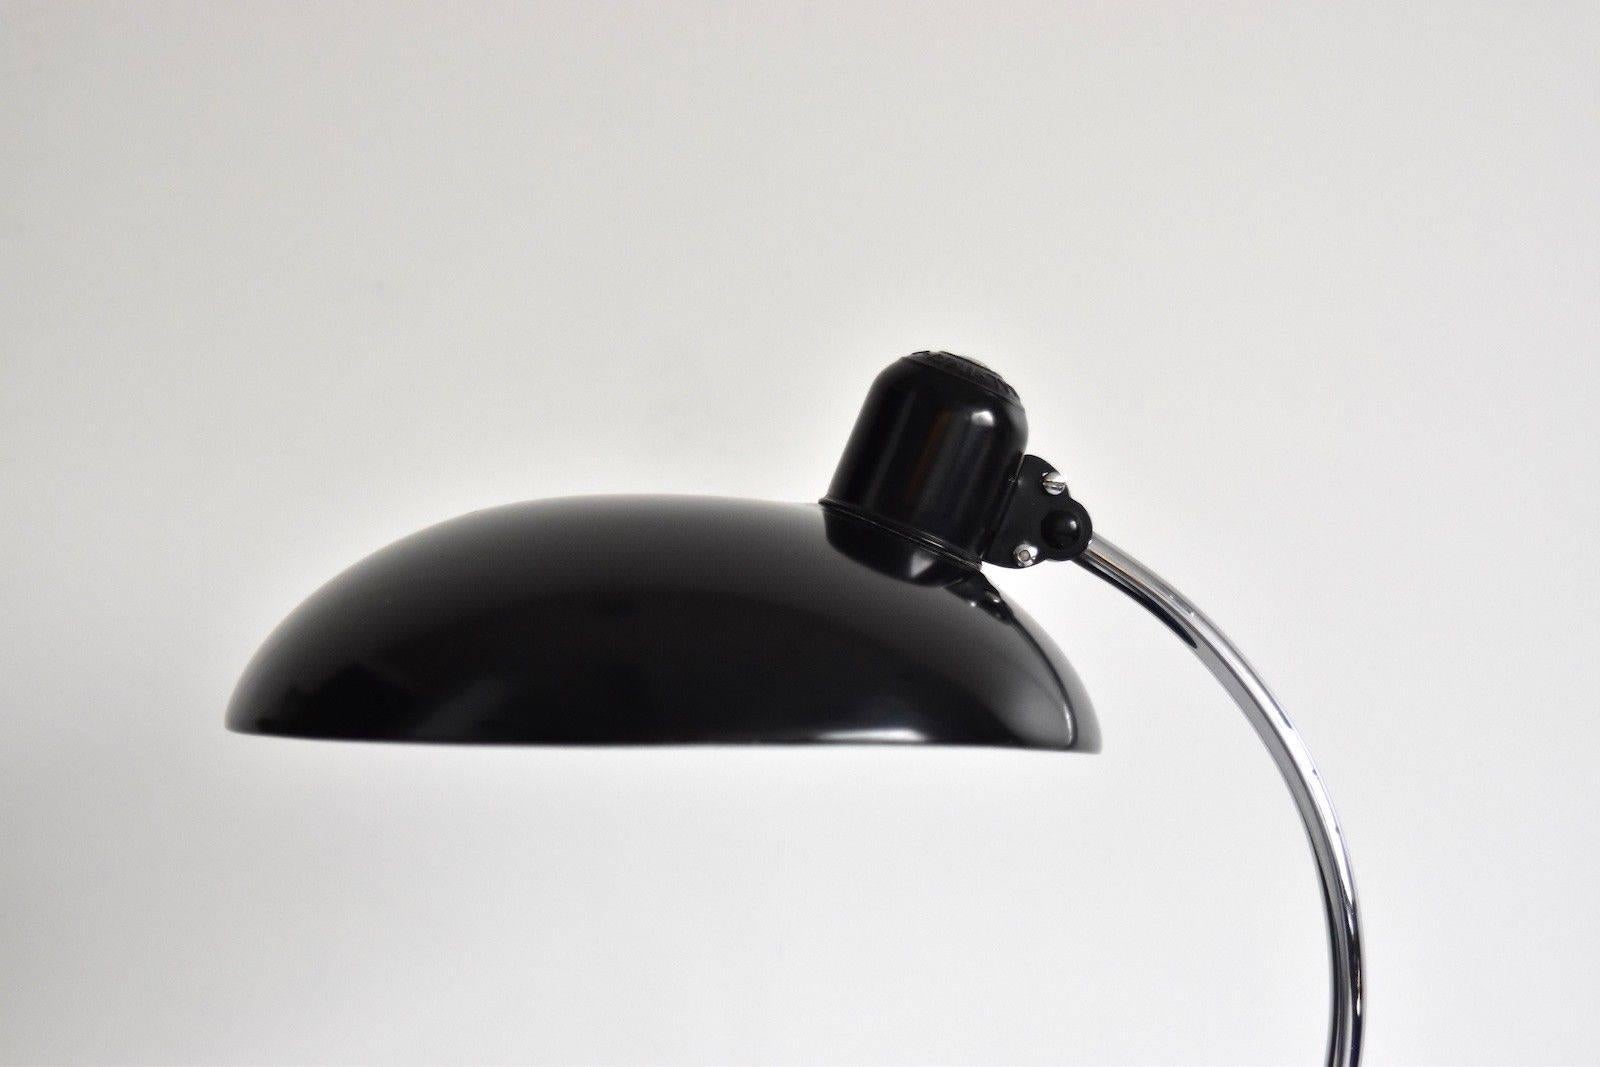 Original Christian Dell desk lamp model 6631 Luxus / president for Kaiser Idell, Germany. Black shade, chrome arm and black base with chrome rim, marked on and in the shade. Arm and shade adjustable. With E26/27 Edison socket. Very nice original